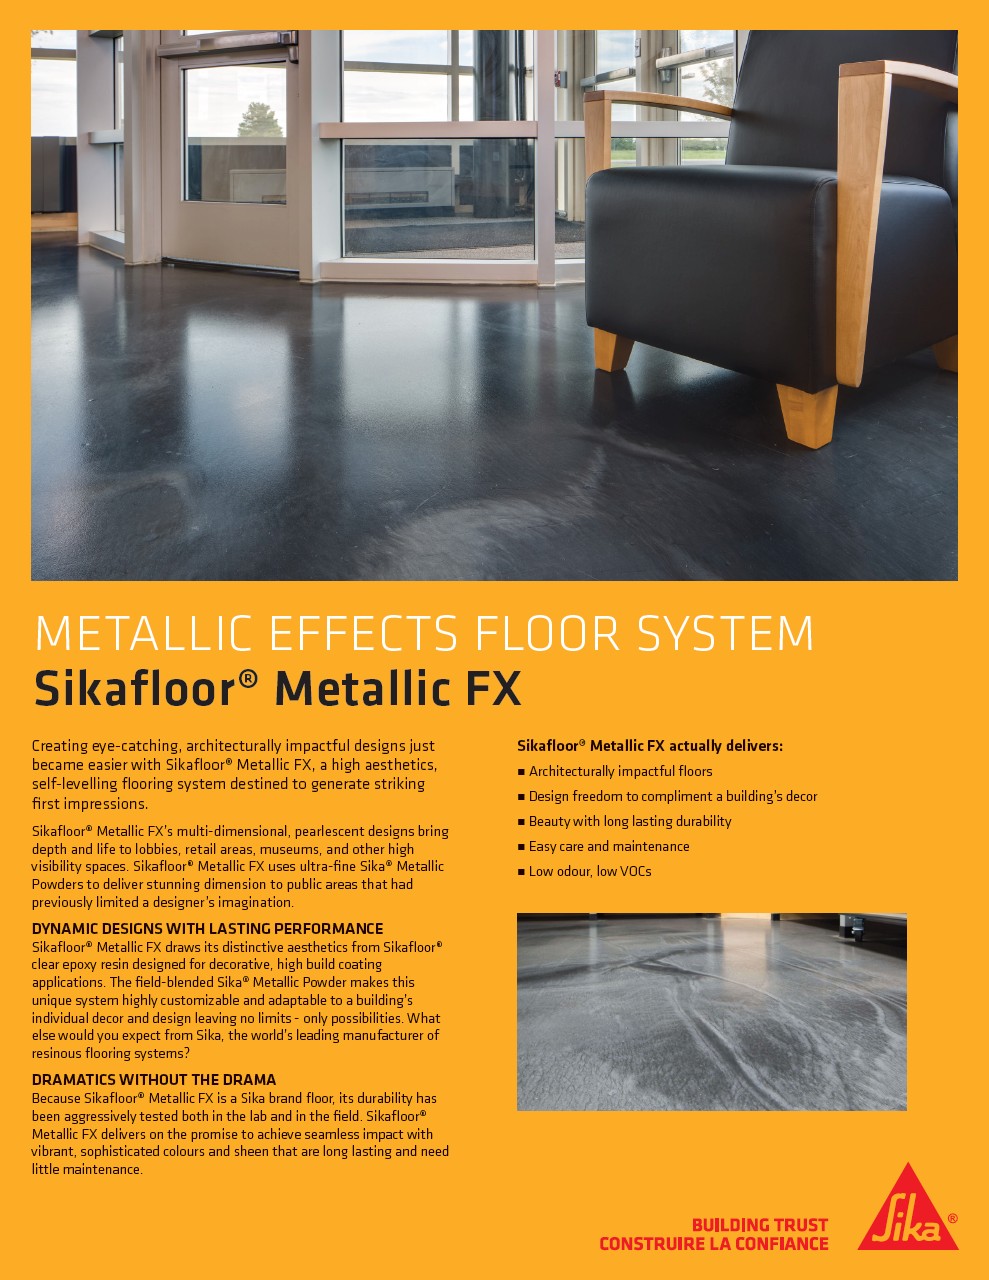 Sikafloor® Metallic FX